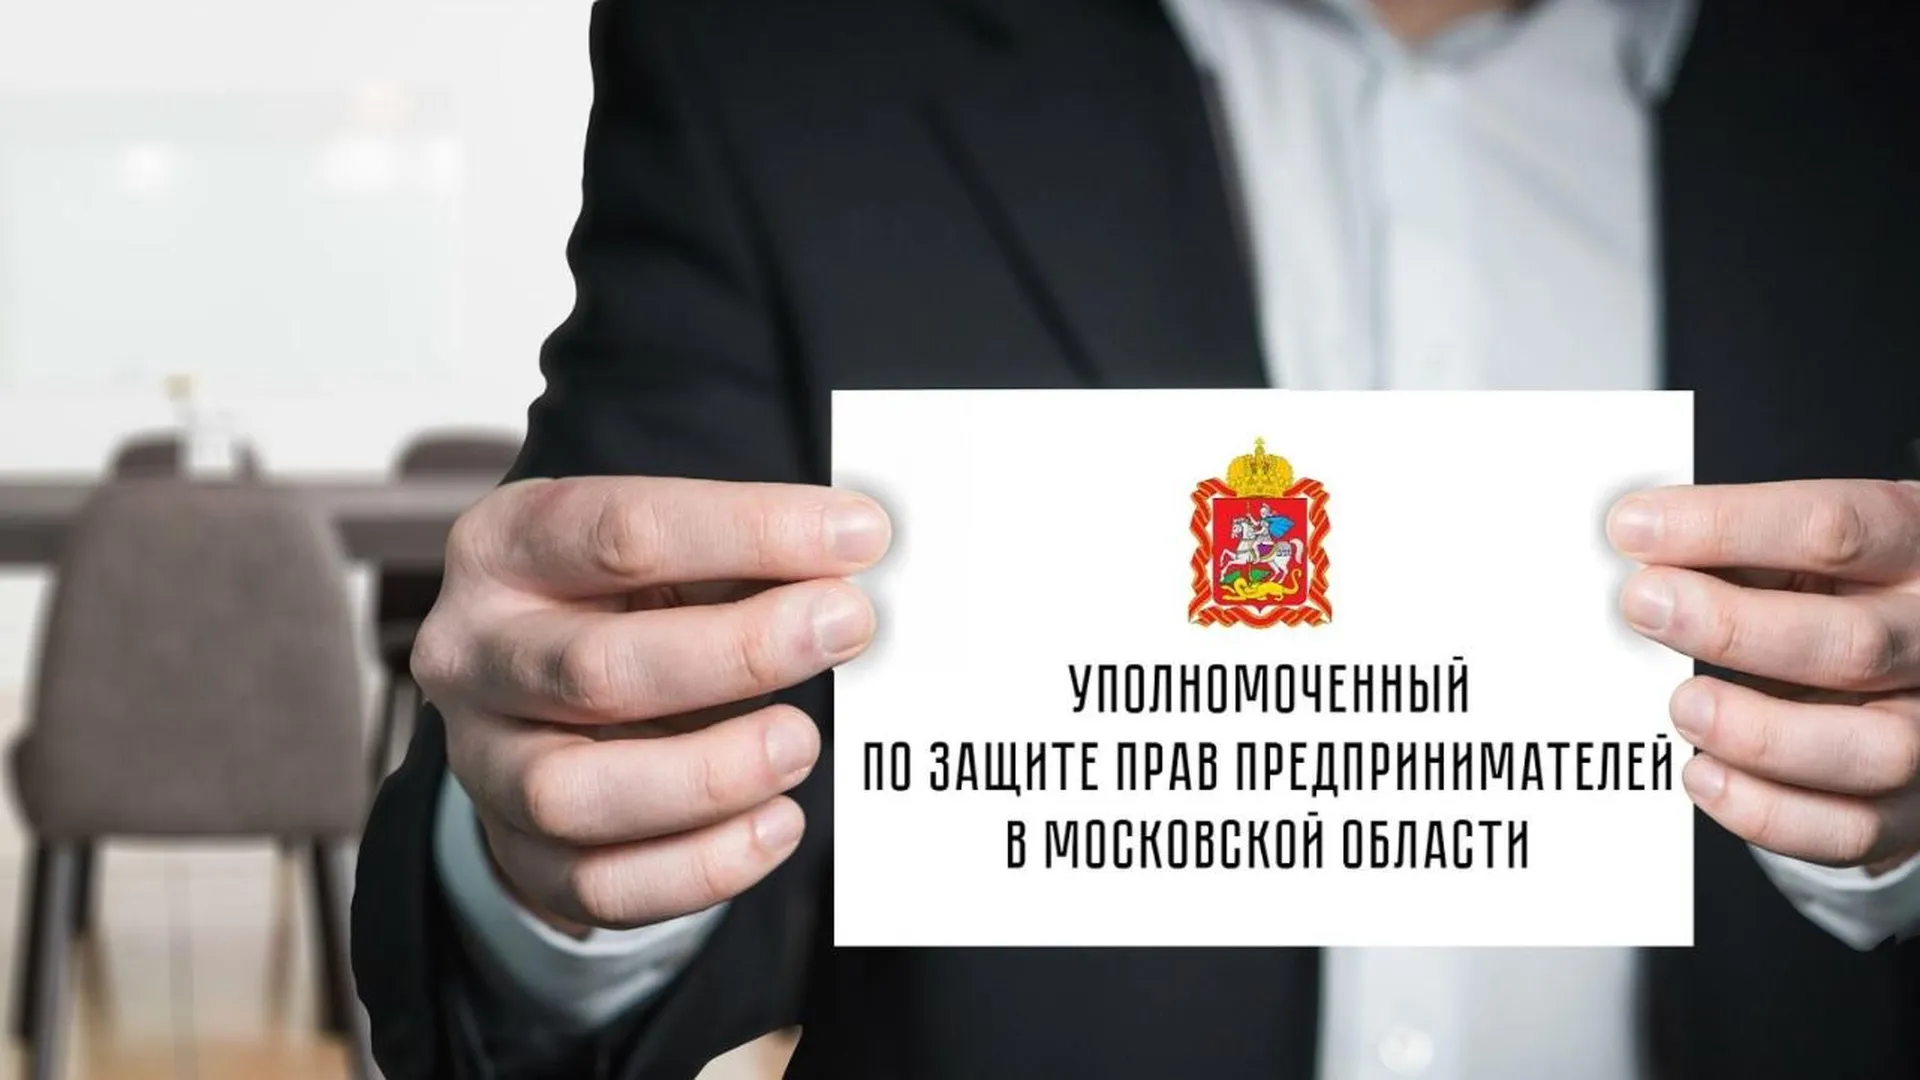 Аппарат Уполномоченного по защите прав предпринимателей в Московской области